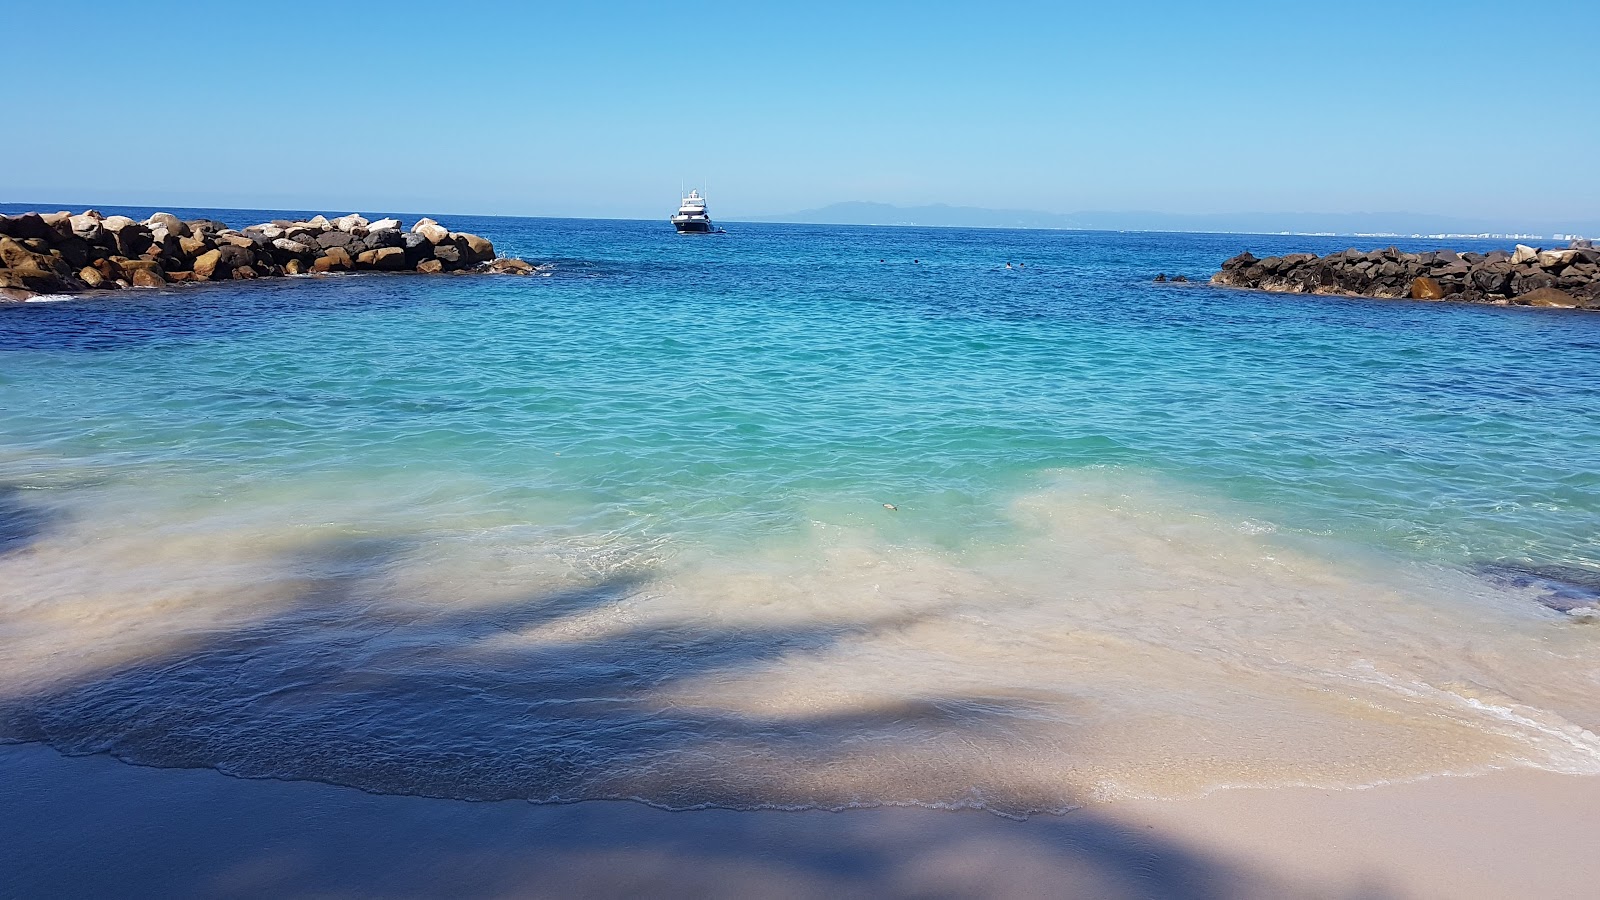 Garza Blanca II'in fotoğrafı plaj tatil beldesi alanı